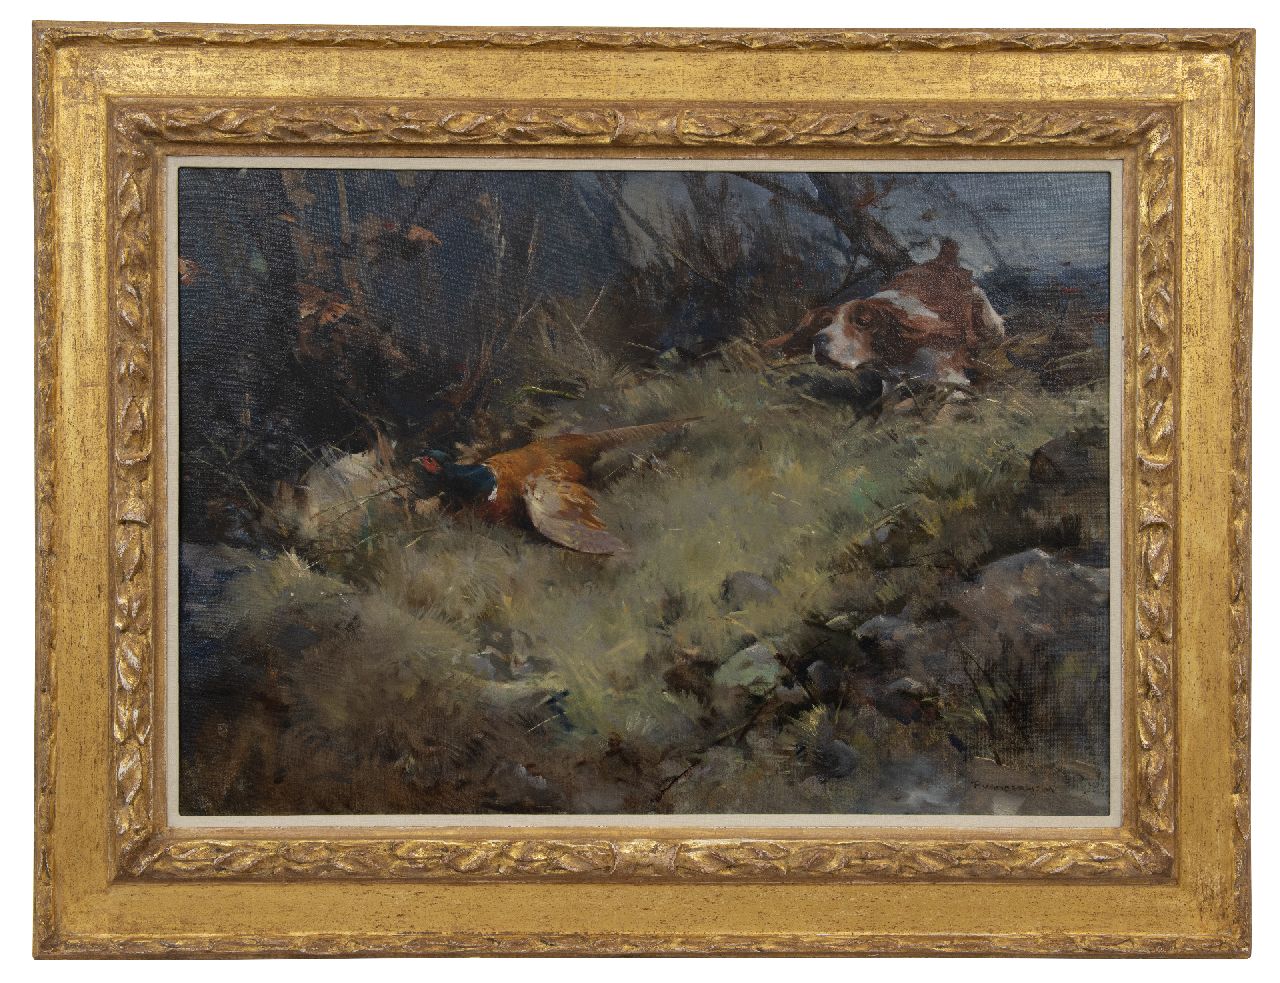 Hem P. van der | Pieter 'Piet' van der Hem | Schilderijen te koop aangeboden | Fazantenjacht, olieverf op doek 70,2 x 102,0 cm, gesigneerd rechtsonder